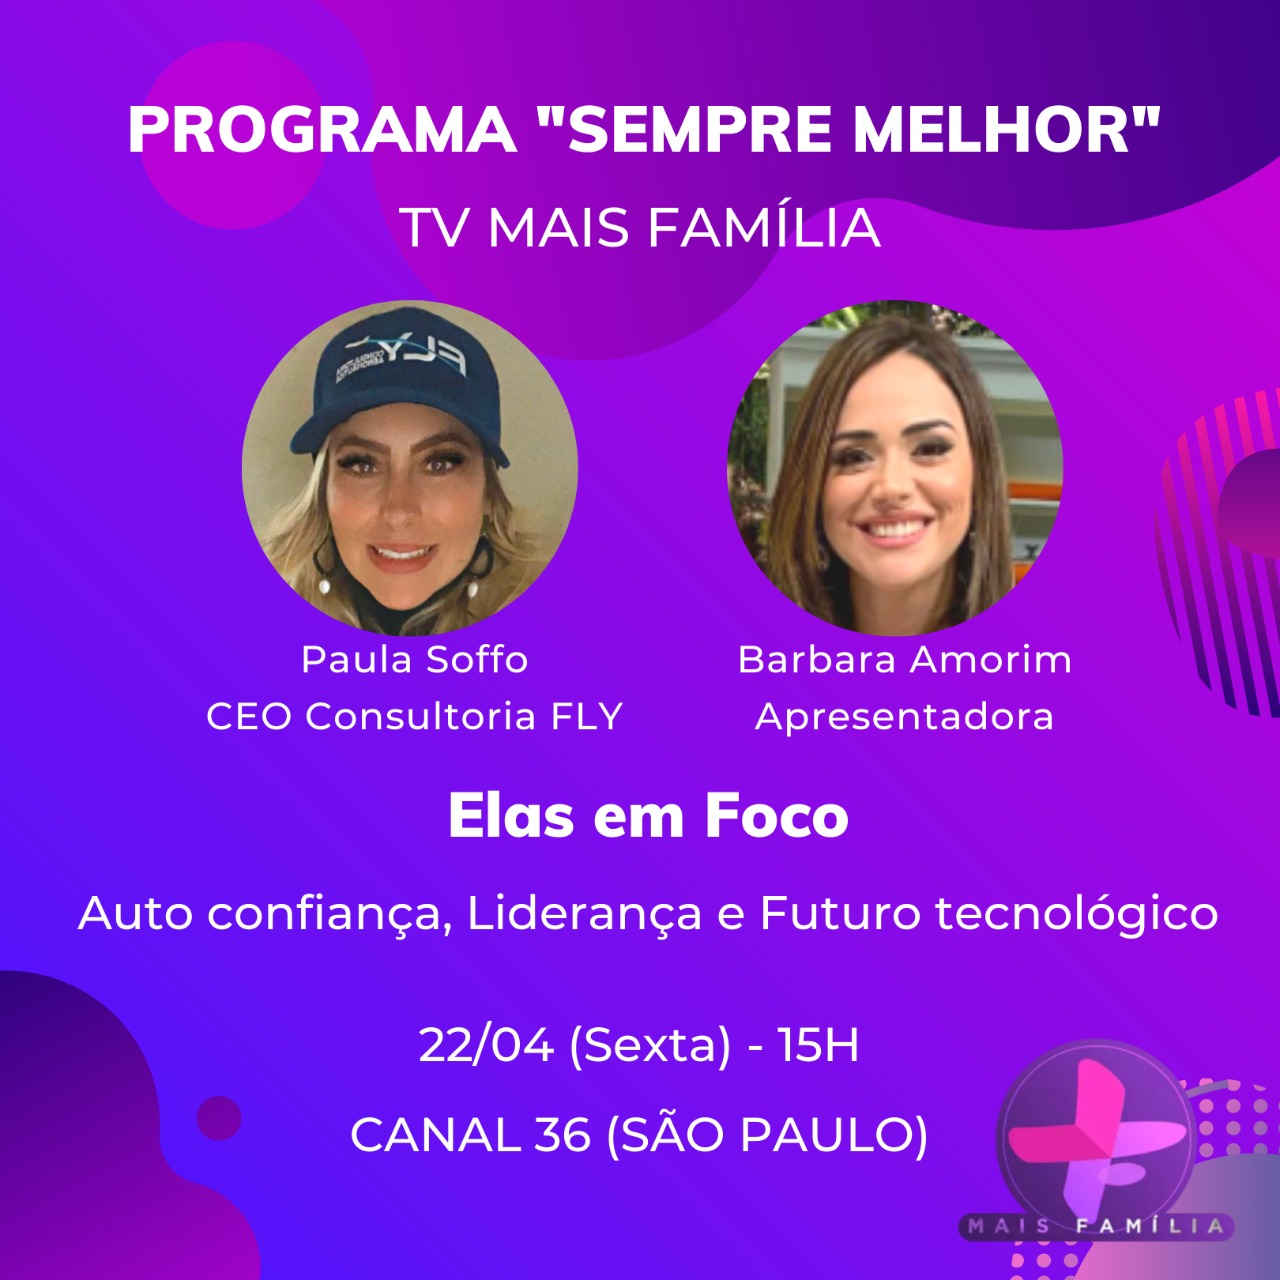 Programa Rede Melhor - TV MAIS FAMILIA - Barbara Amorim e Paula Soffo